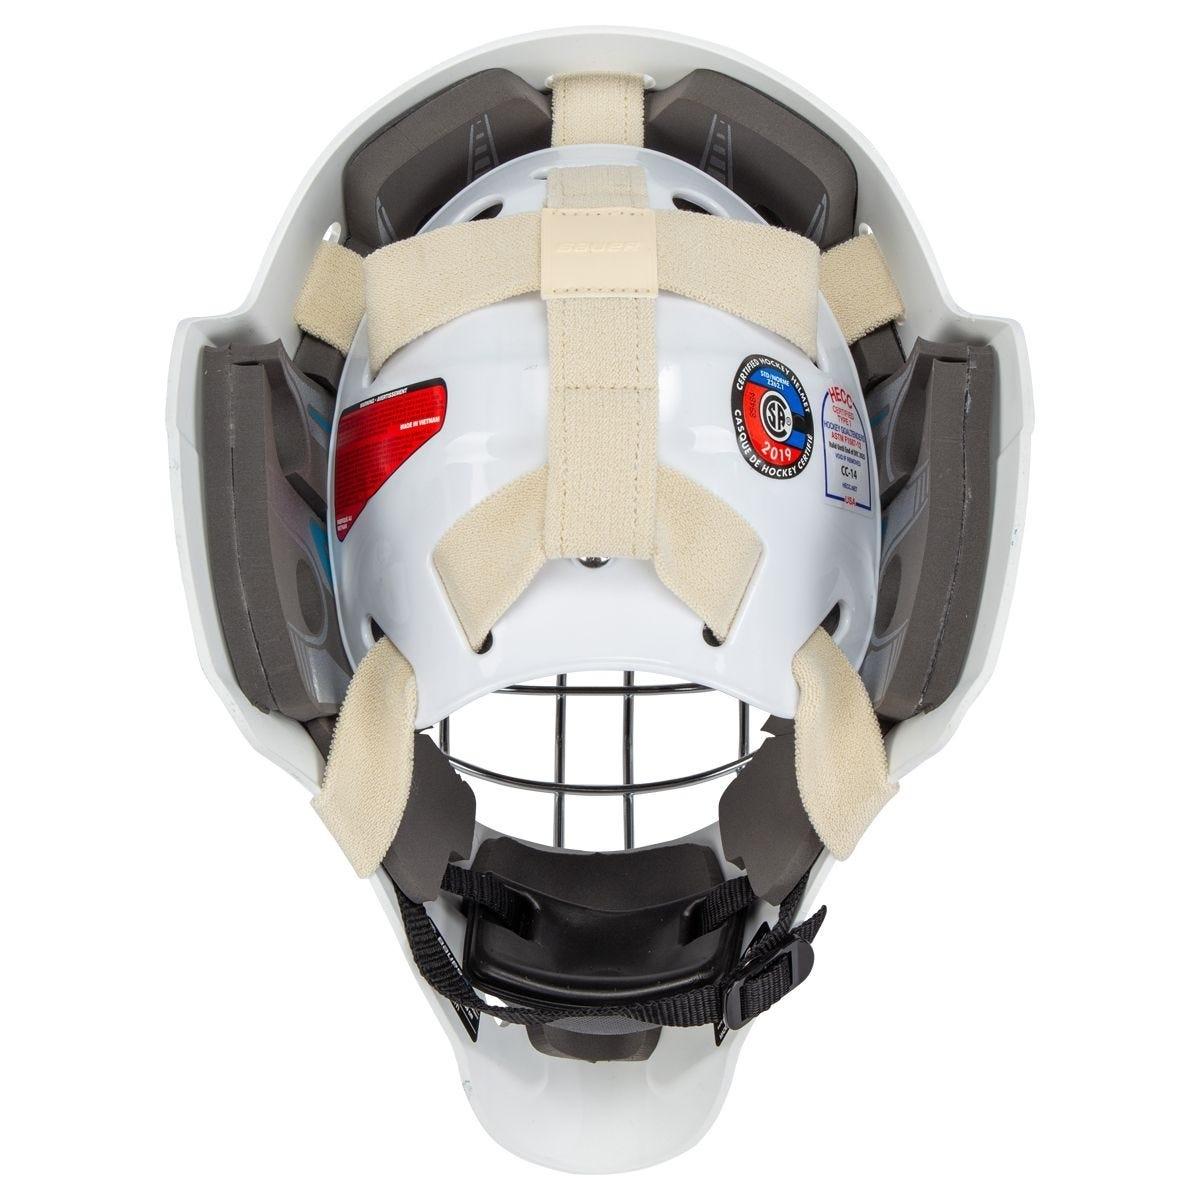 Bauer 930 Sr. Certified Goalie Maskproduct zoom image #5